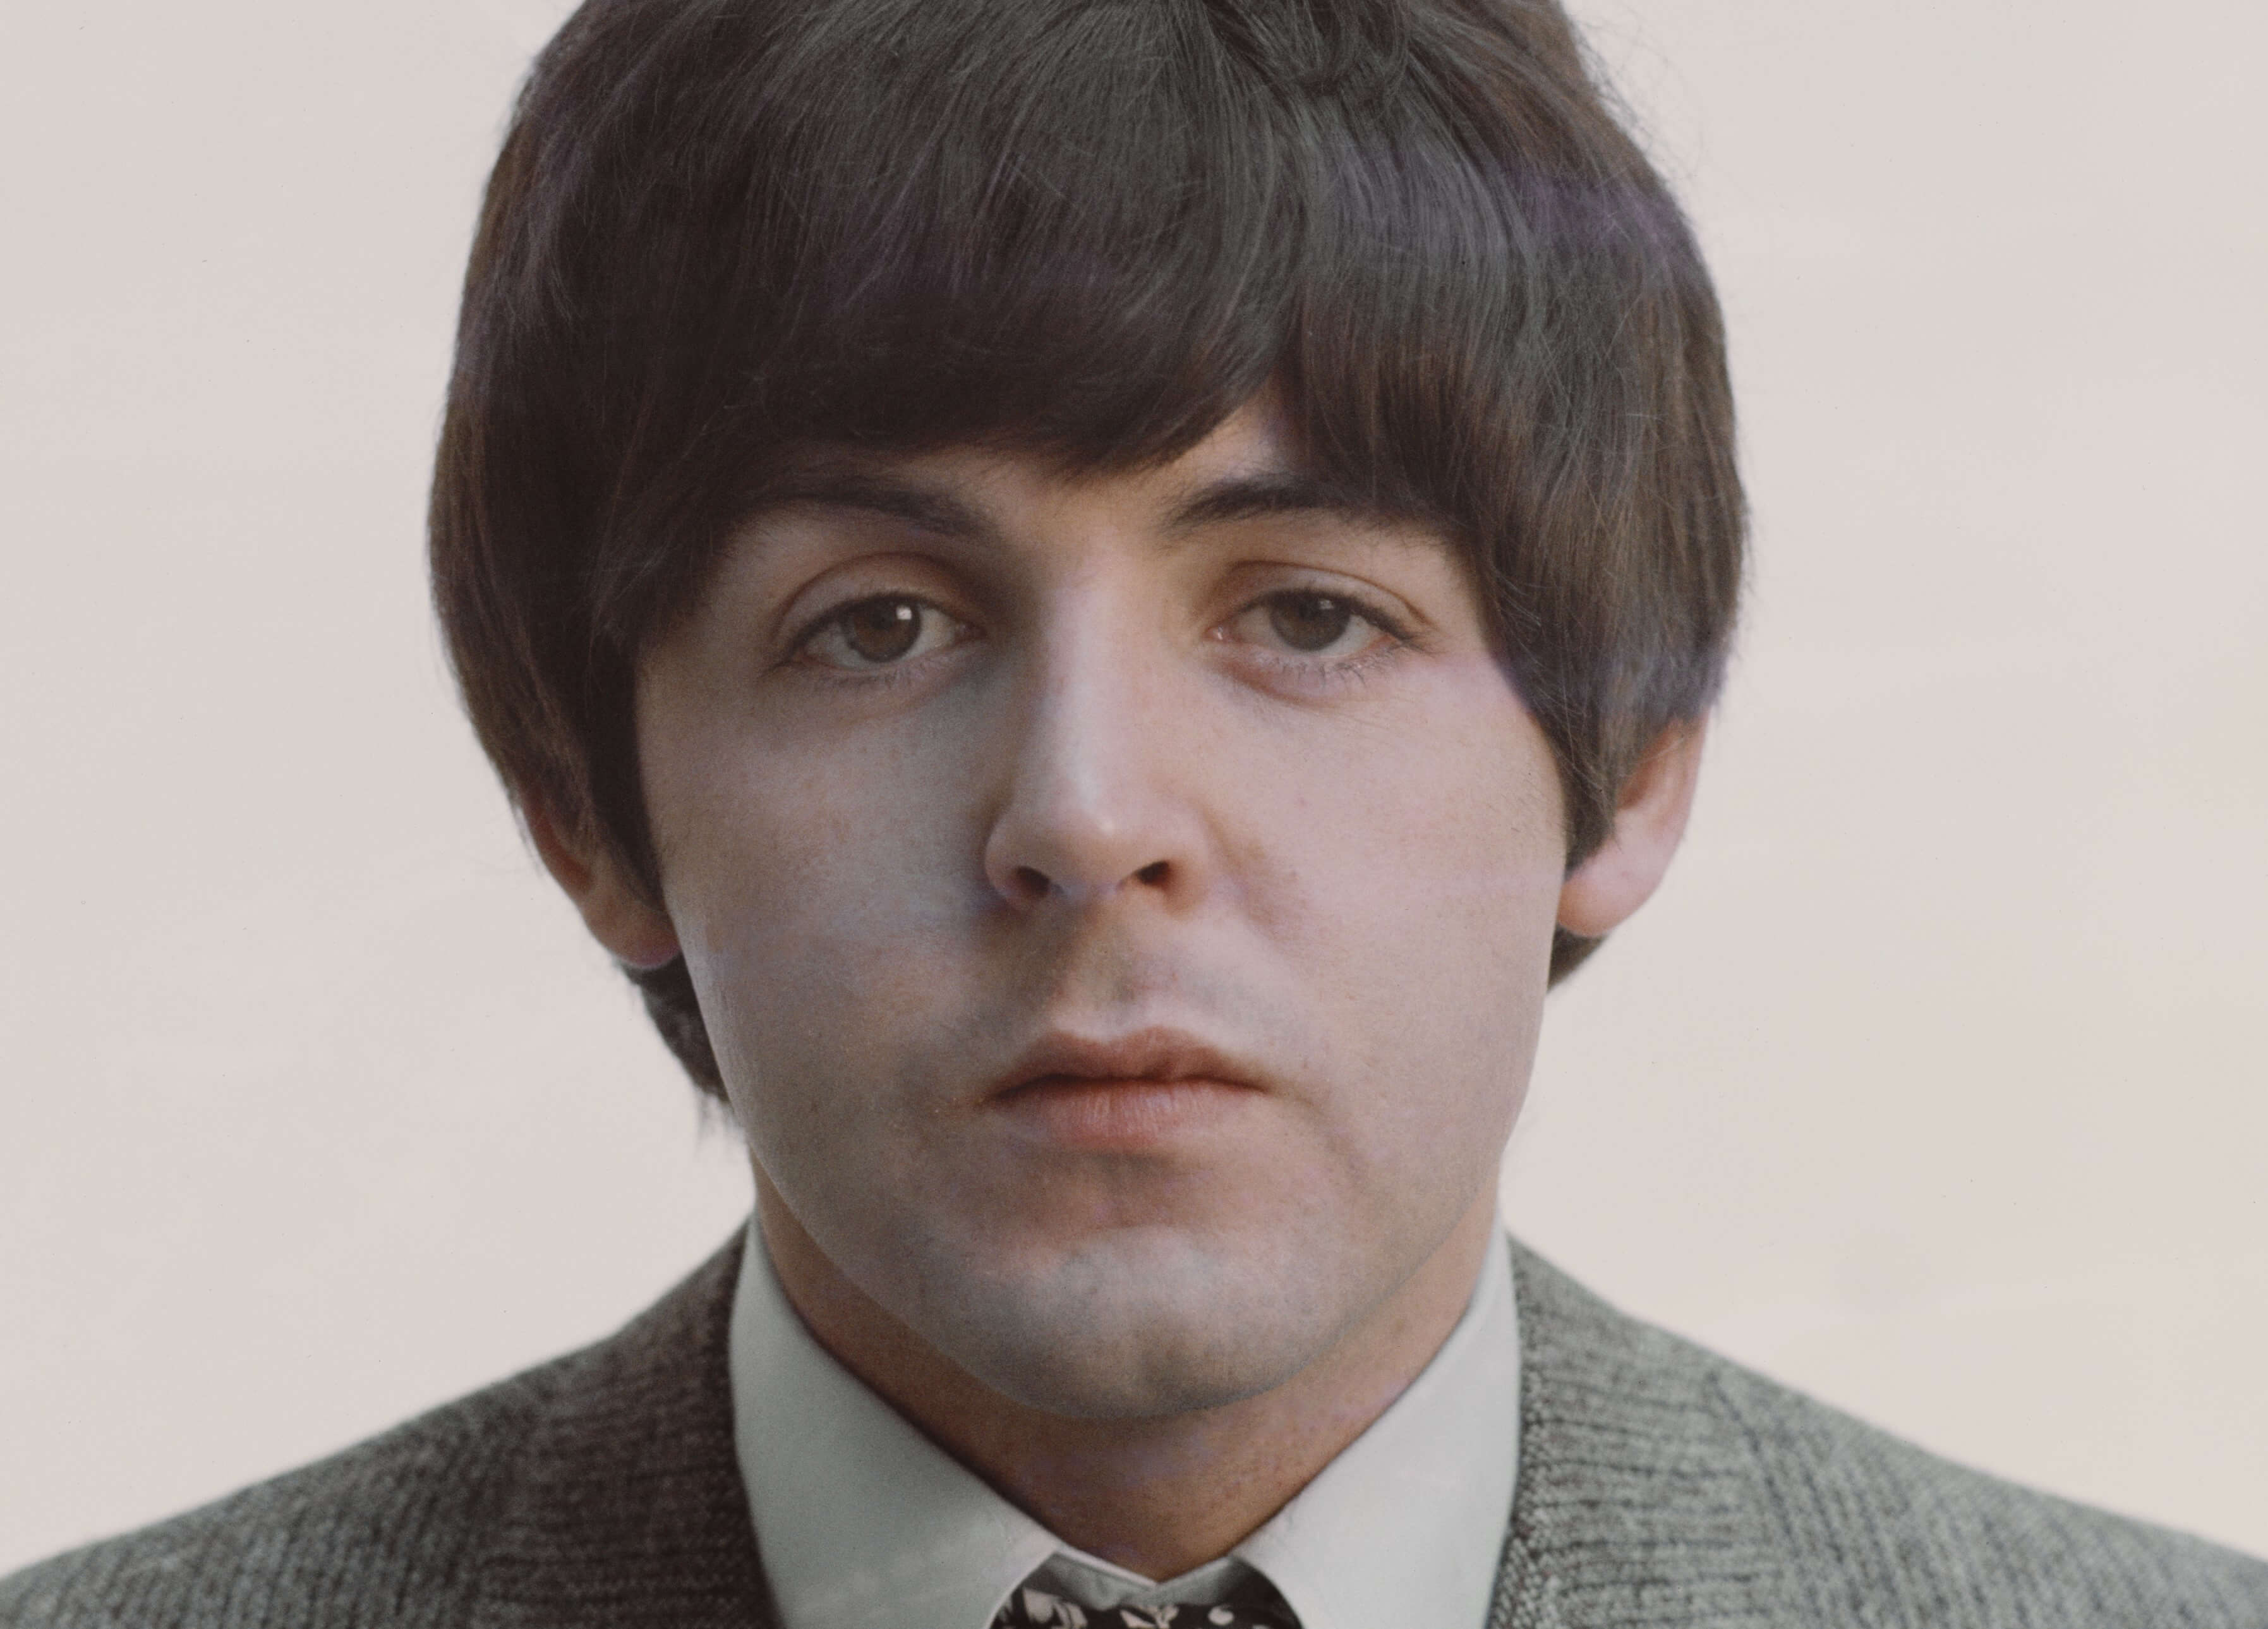 Paul McCartney Wrote Mary Hopkin's 'Goodbye' and She Didn't Like It